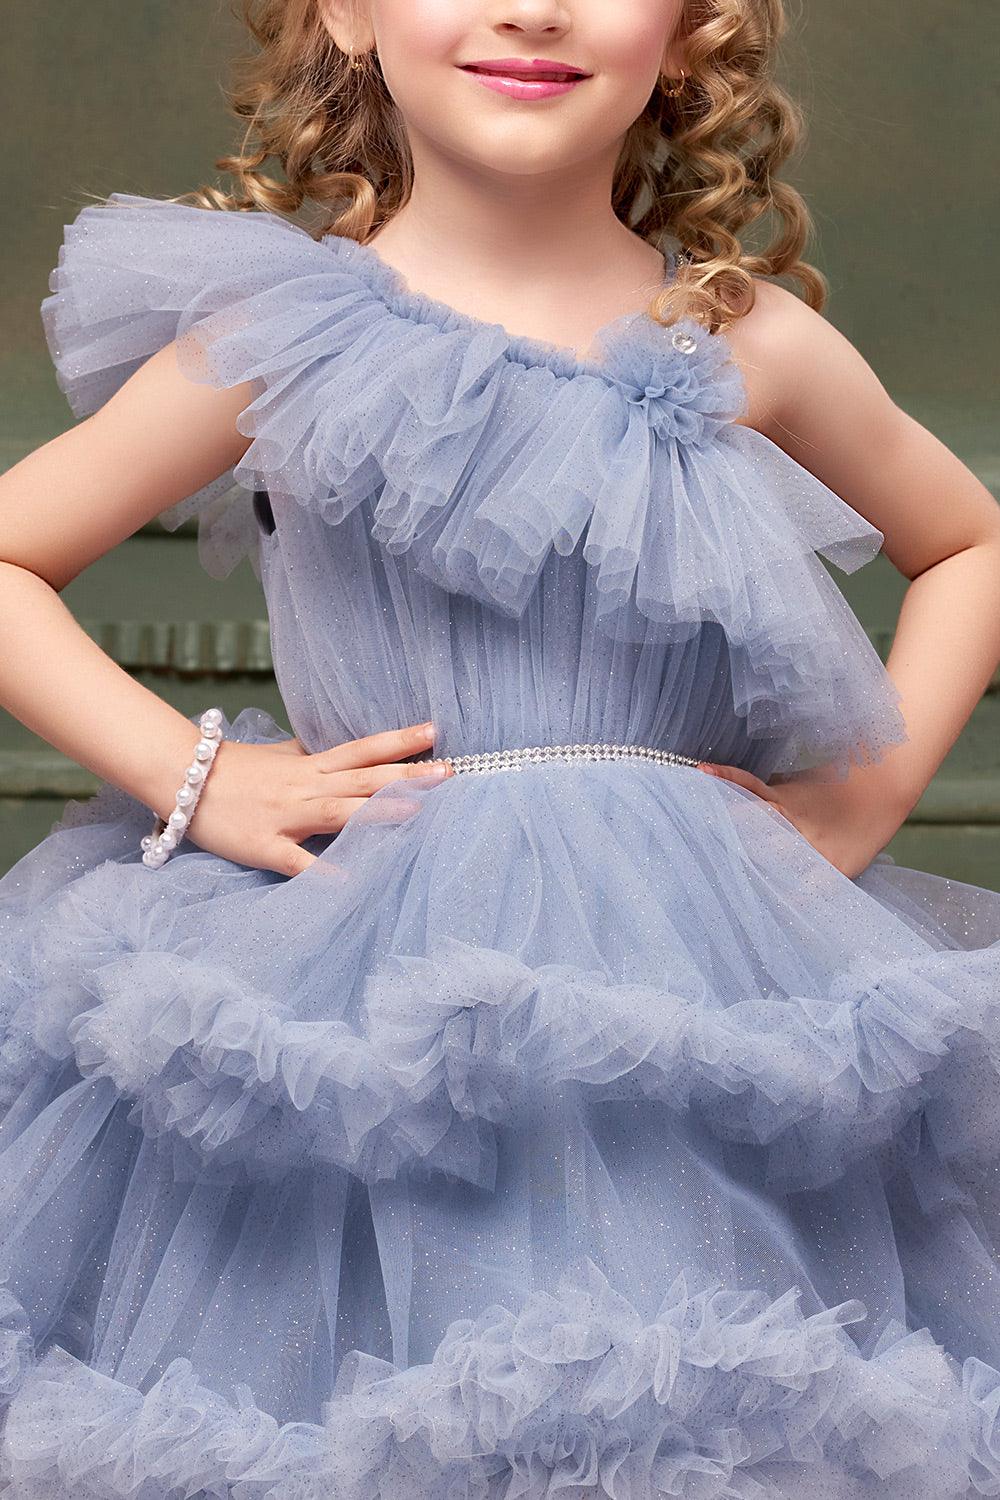 Slate Blue Ruffle Tailback Frock: Elegant Playfulness for Girls.6 - Lagorii Kids